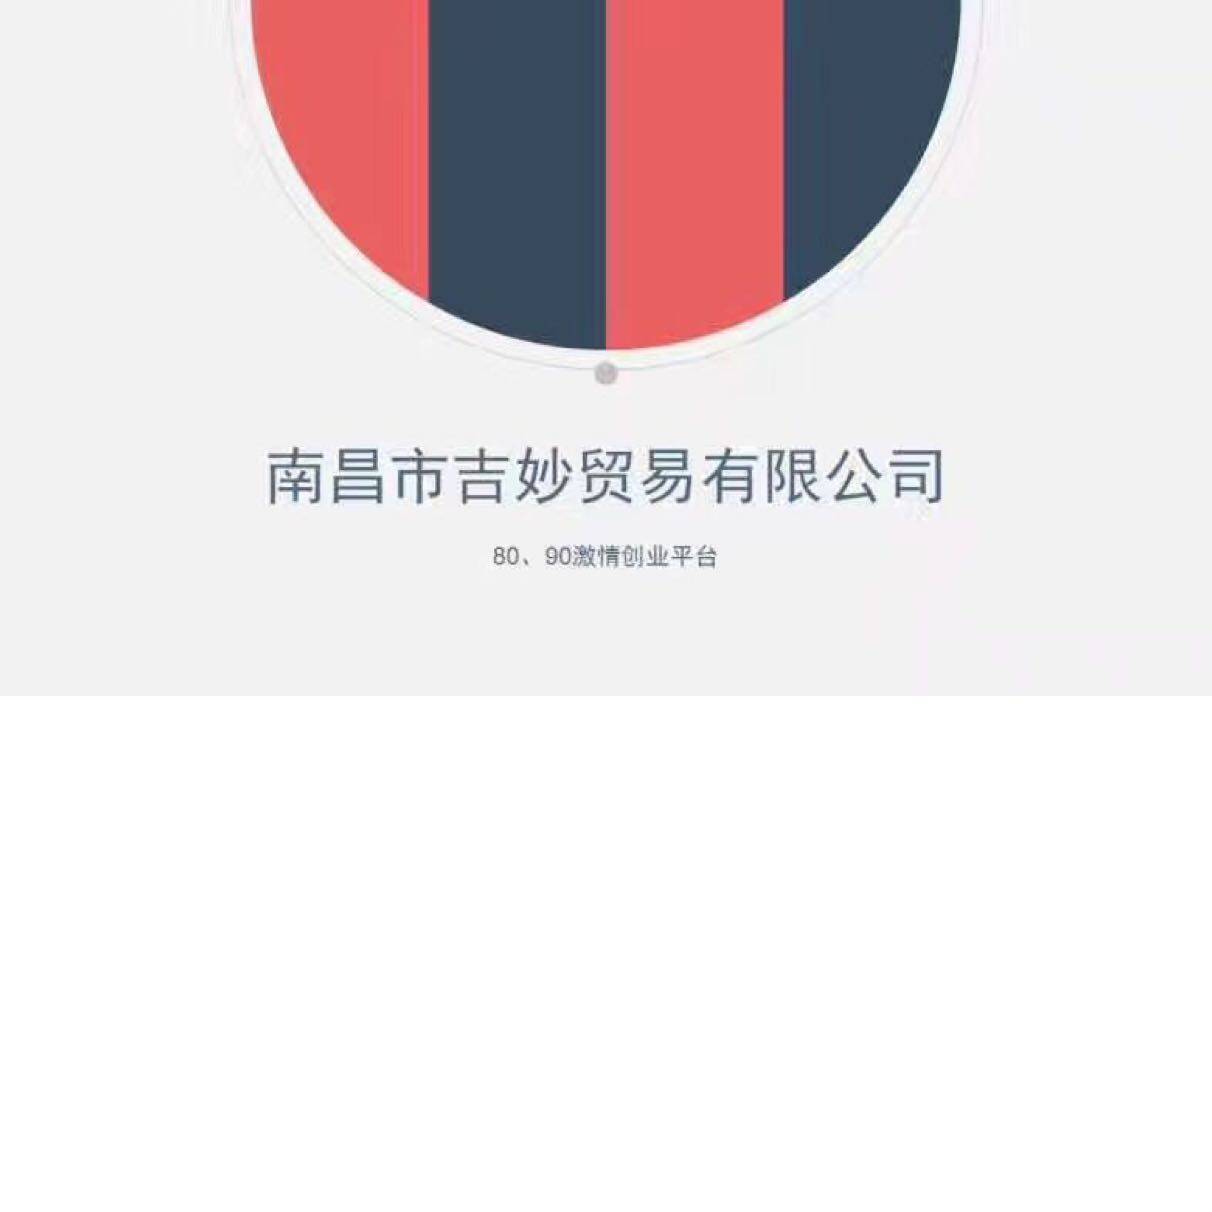 南昌市吉妙贸易有限公司logo